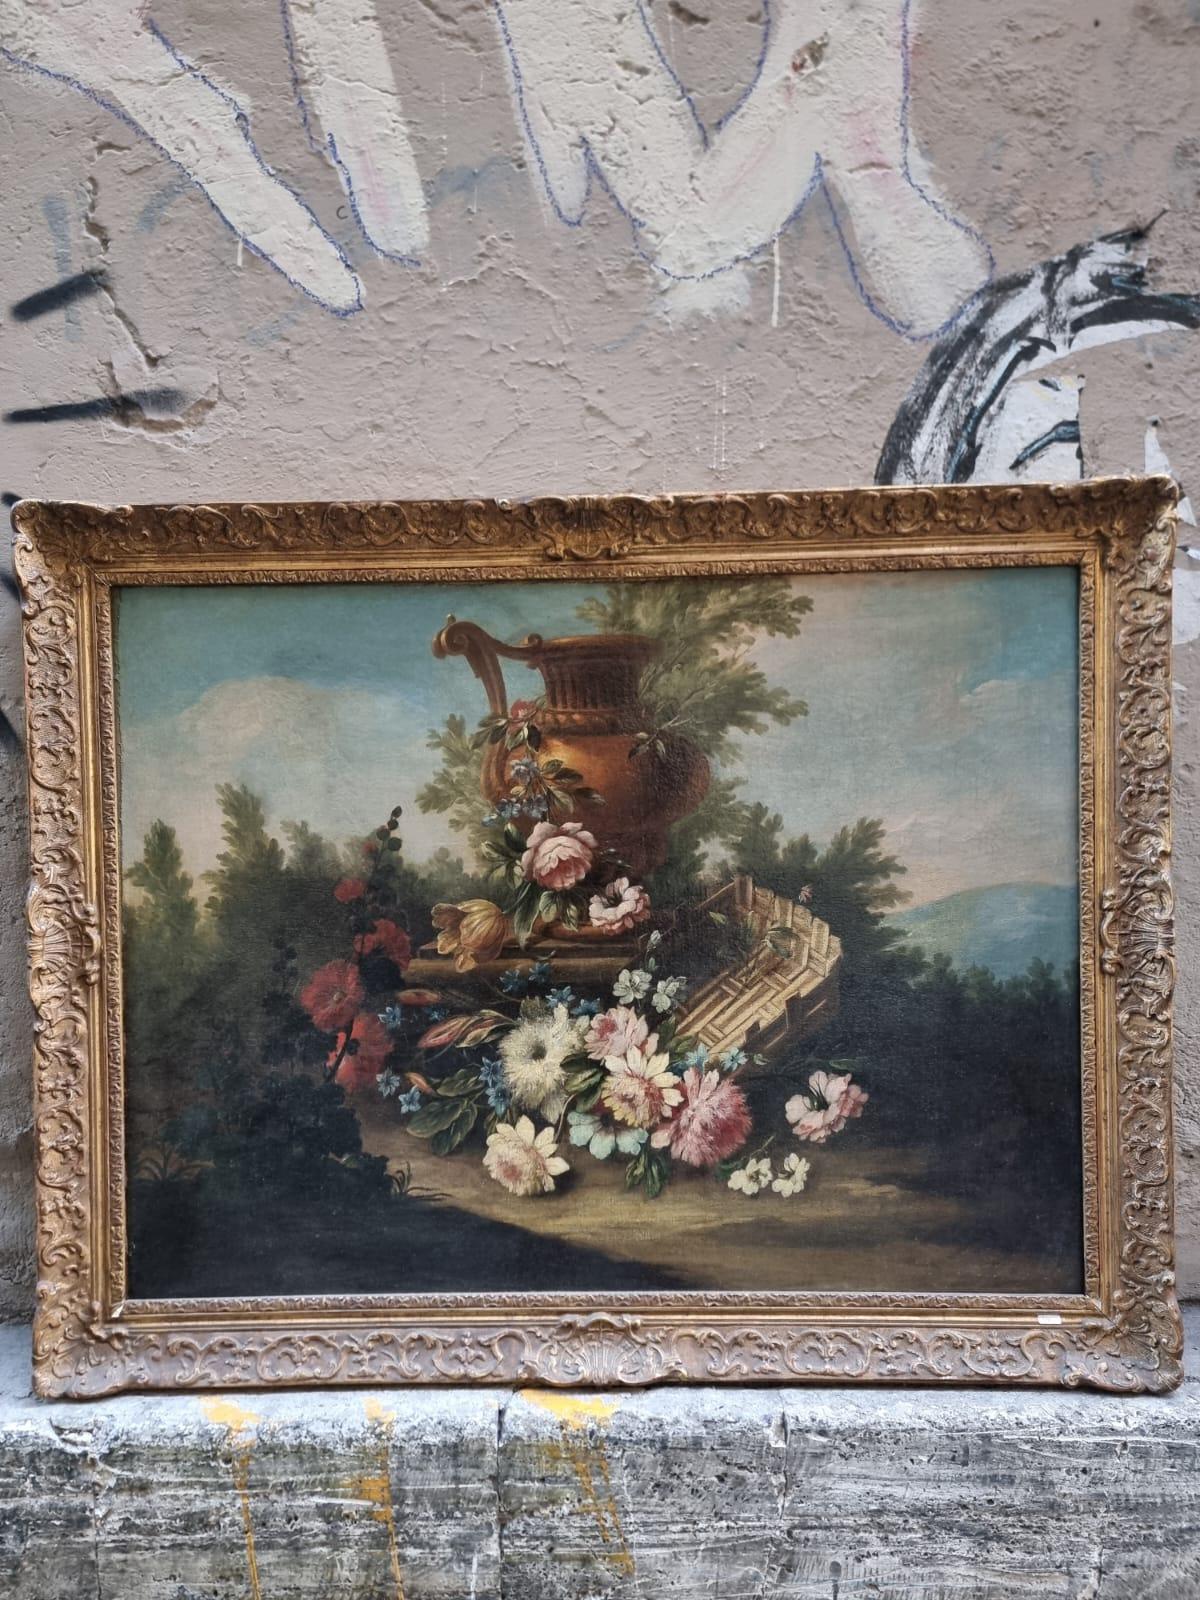 Feine Öl auf Leinwand Gemälde von Stillleben, 18. Jahrhundert, Frankreich. 

Das Gemälde zeigt eine Komposition aus verschiedenen Blumenarten, einer großen Vase und einem Korb. Eine der Besonderheiten des Gemäldes ist die Verwendung von Farben, die